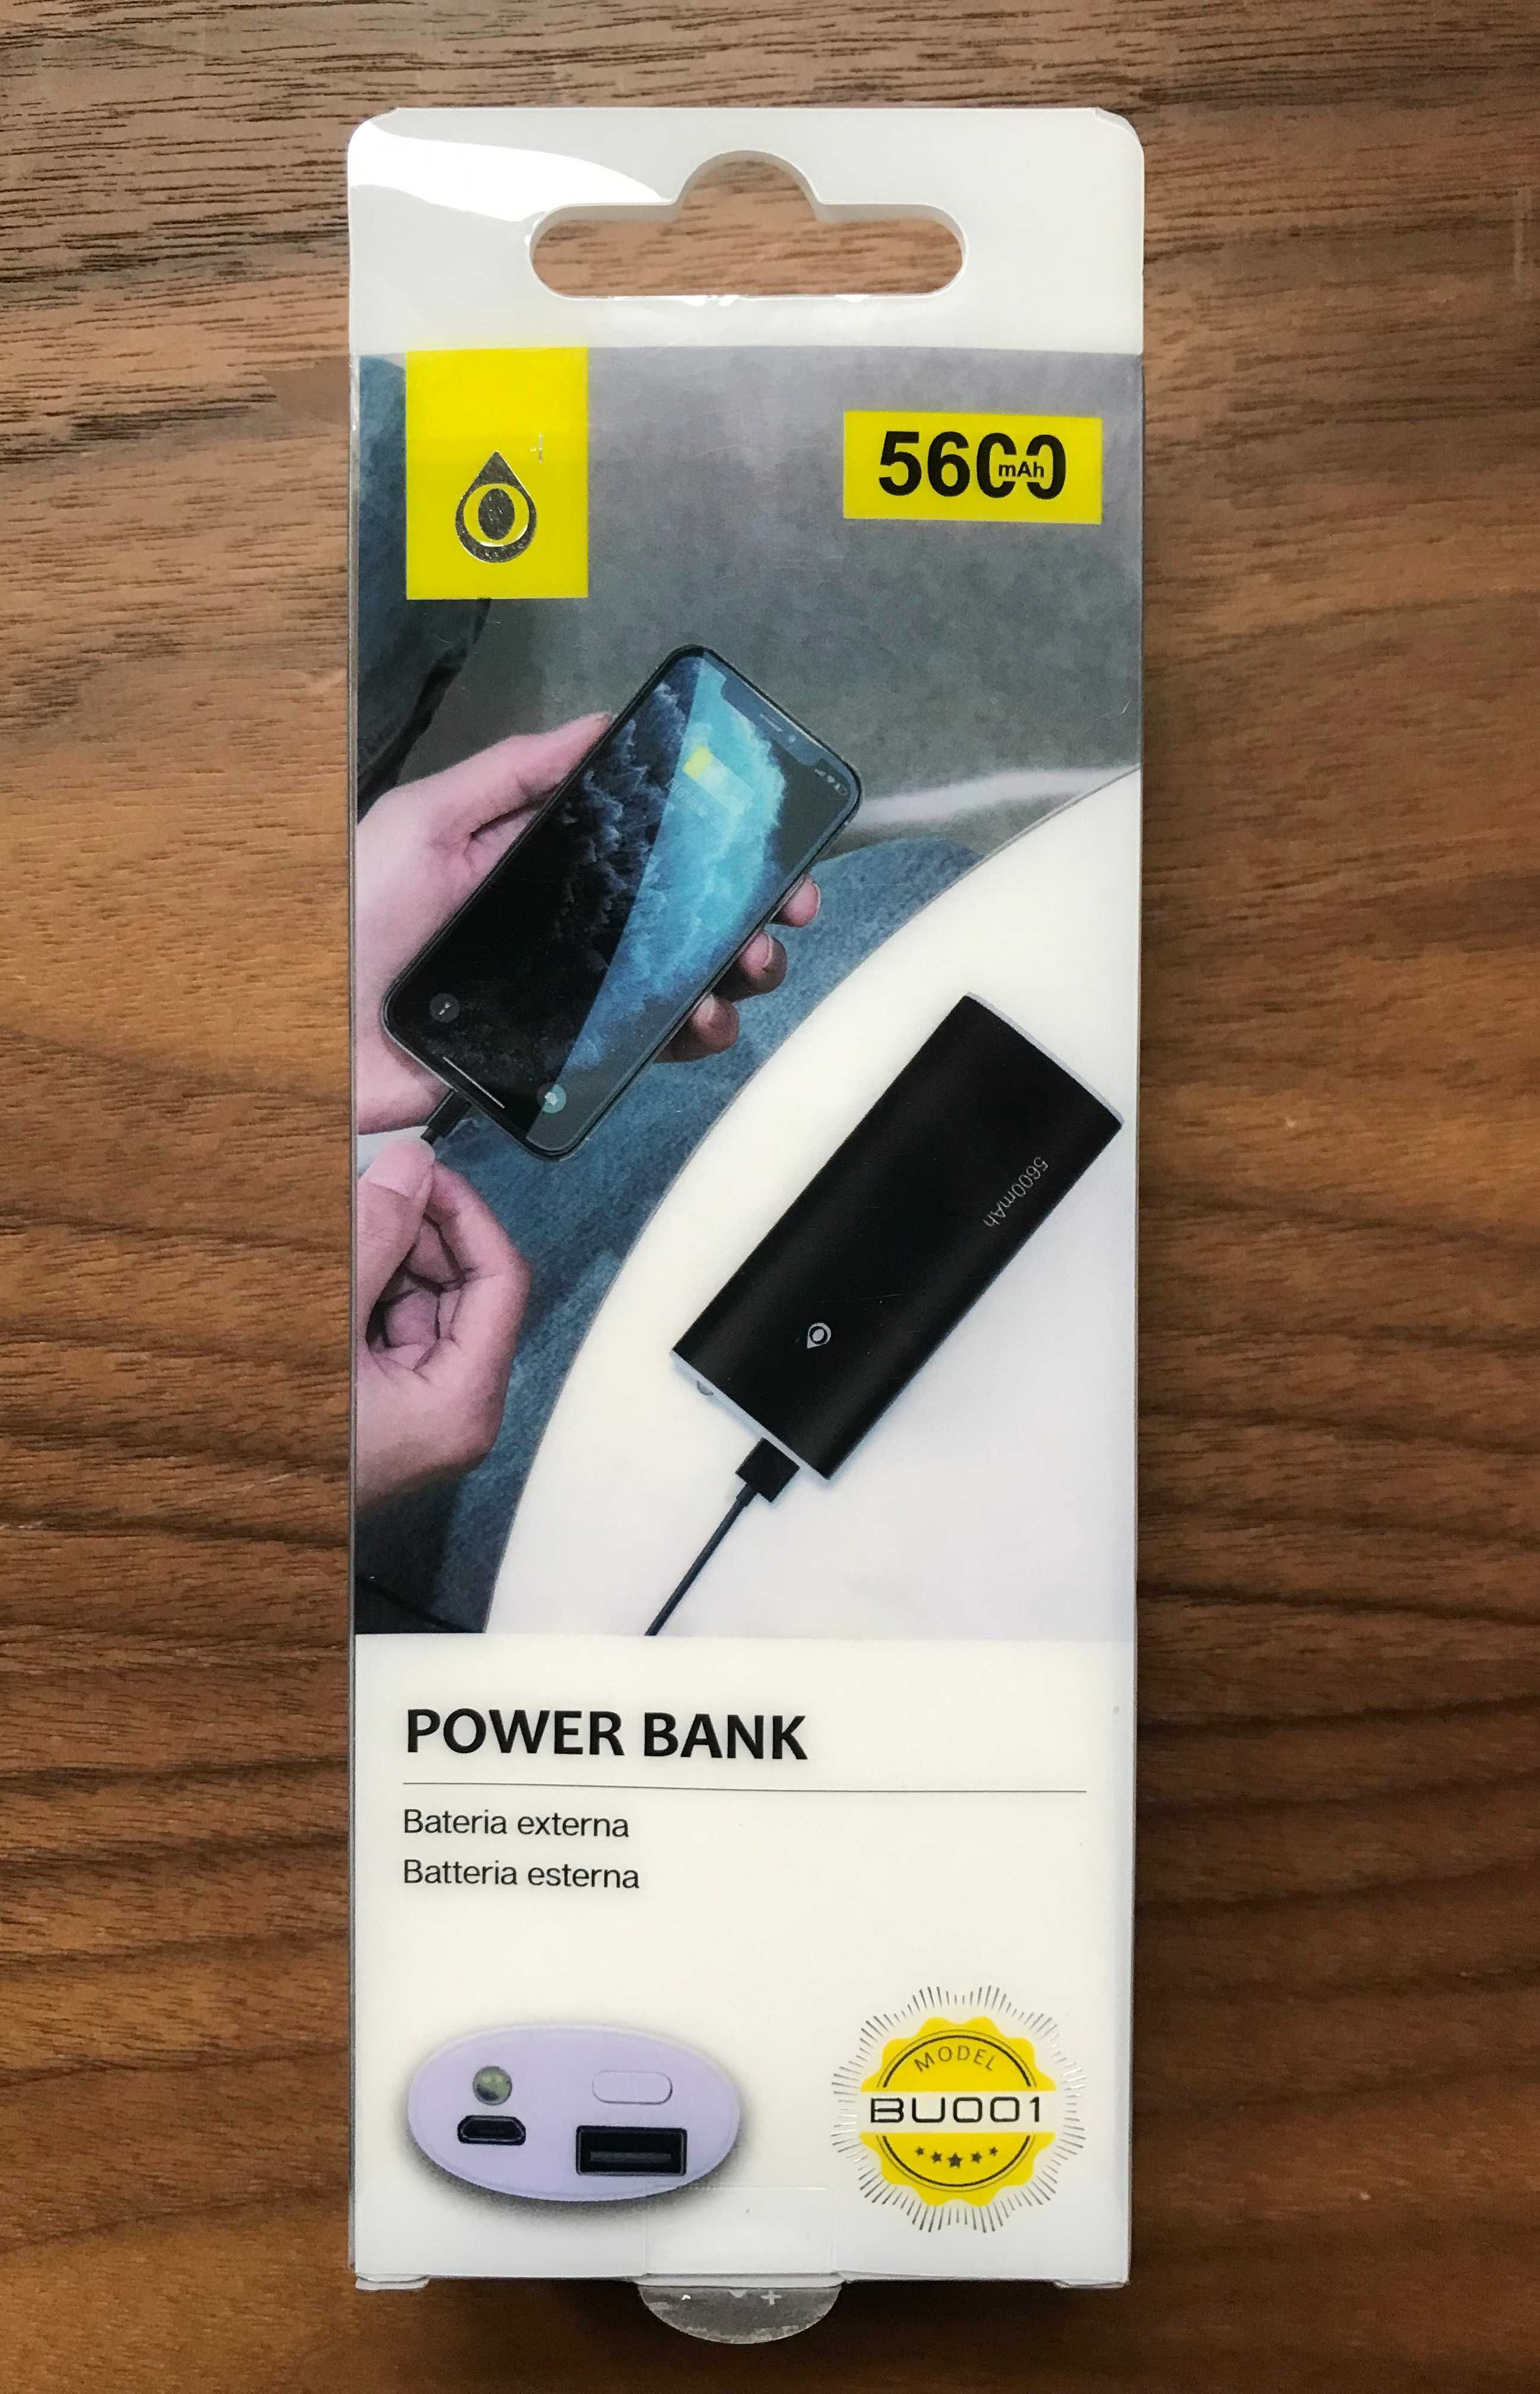 Power Bank / Bateria externa de 5600mAh com USB e luz LED